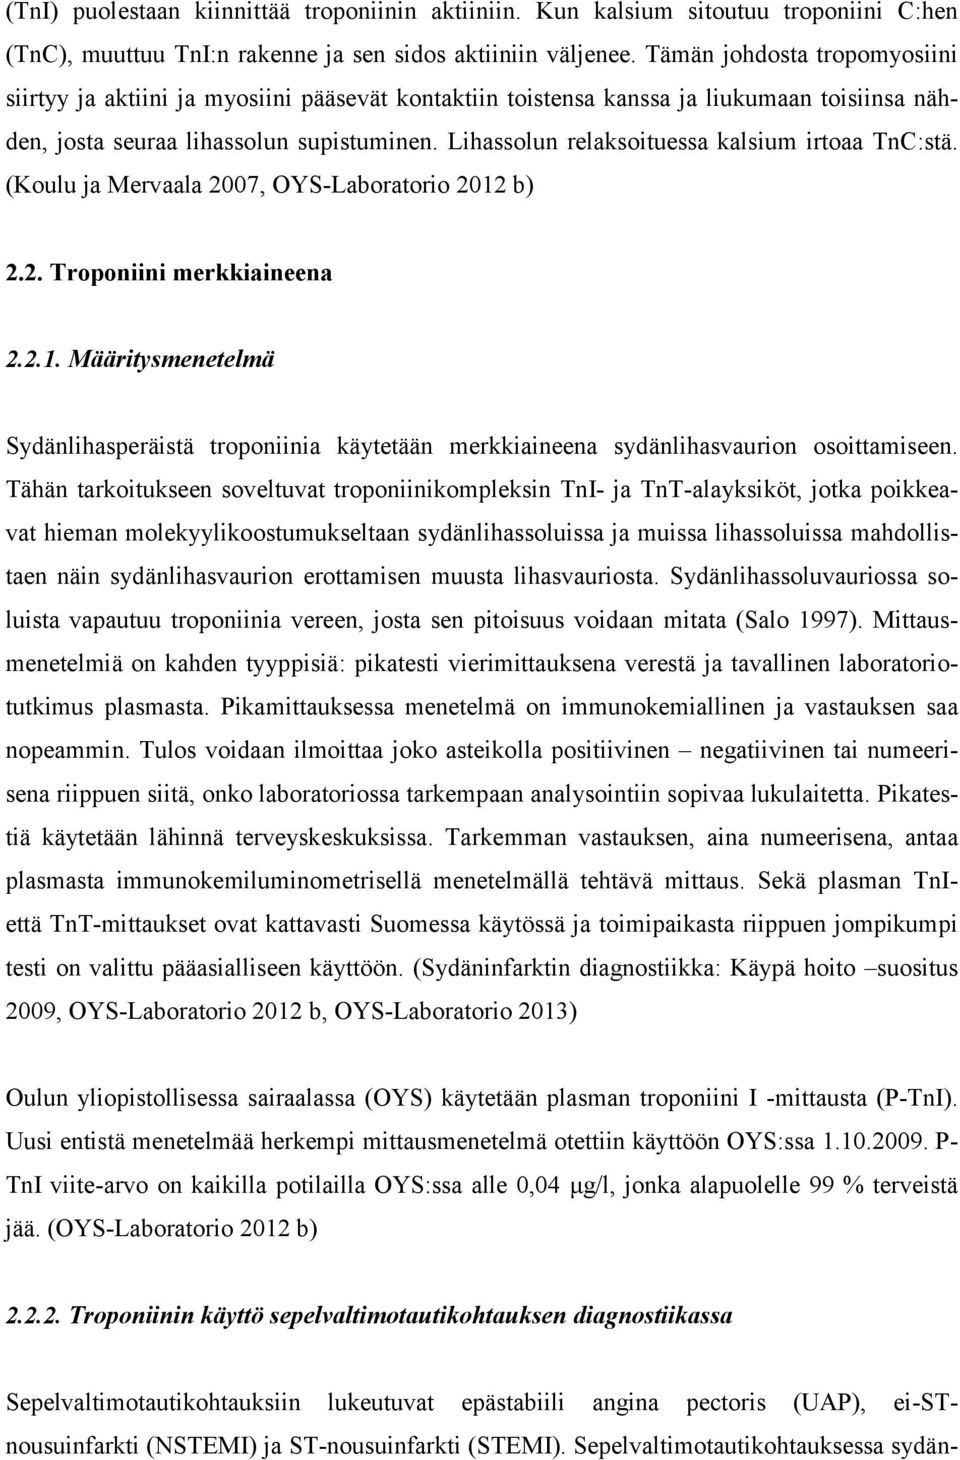 Lihassolun relaksoituessa kalsium irtoaa TnC:stä. (Koulu ja Mervaala 2007, OYS-Laboratorio 2012